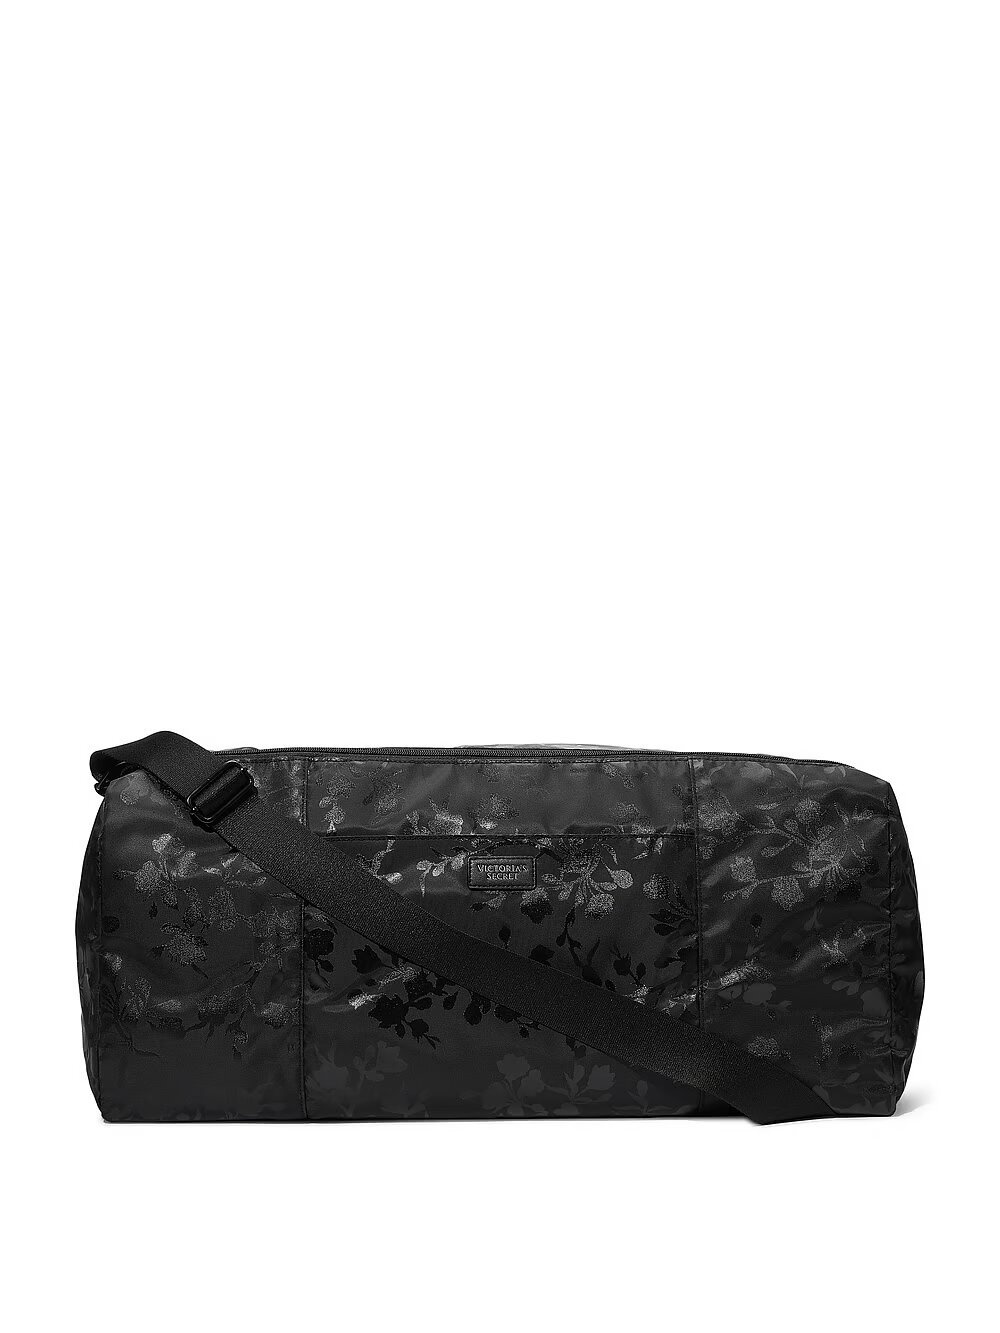 Спортивная сумка Victoria's Secret Duffle Bag 975270QBS фото